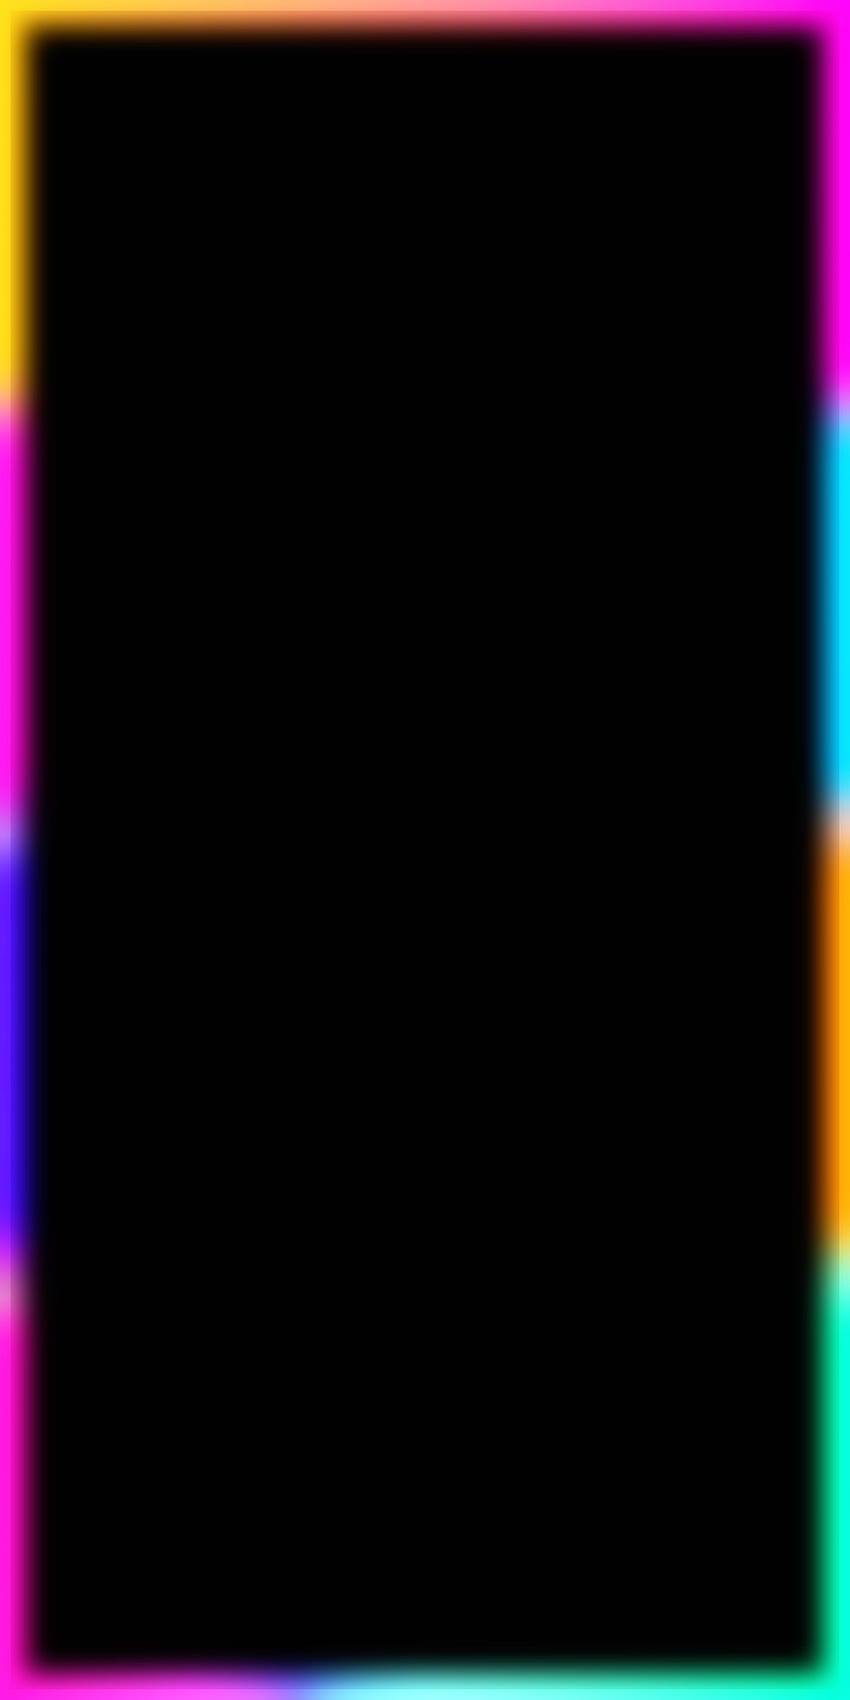 Neonkanten, Pink, Blau, Gelb, Dunkel, Amoled, Buntheit, Orange, Grün HD-Handy-Hintergrundbild